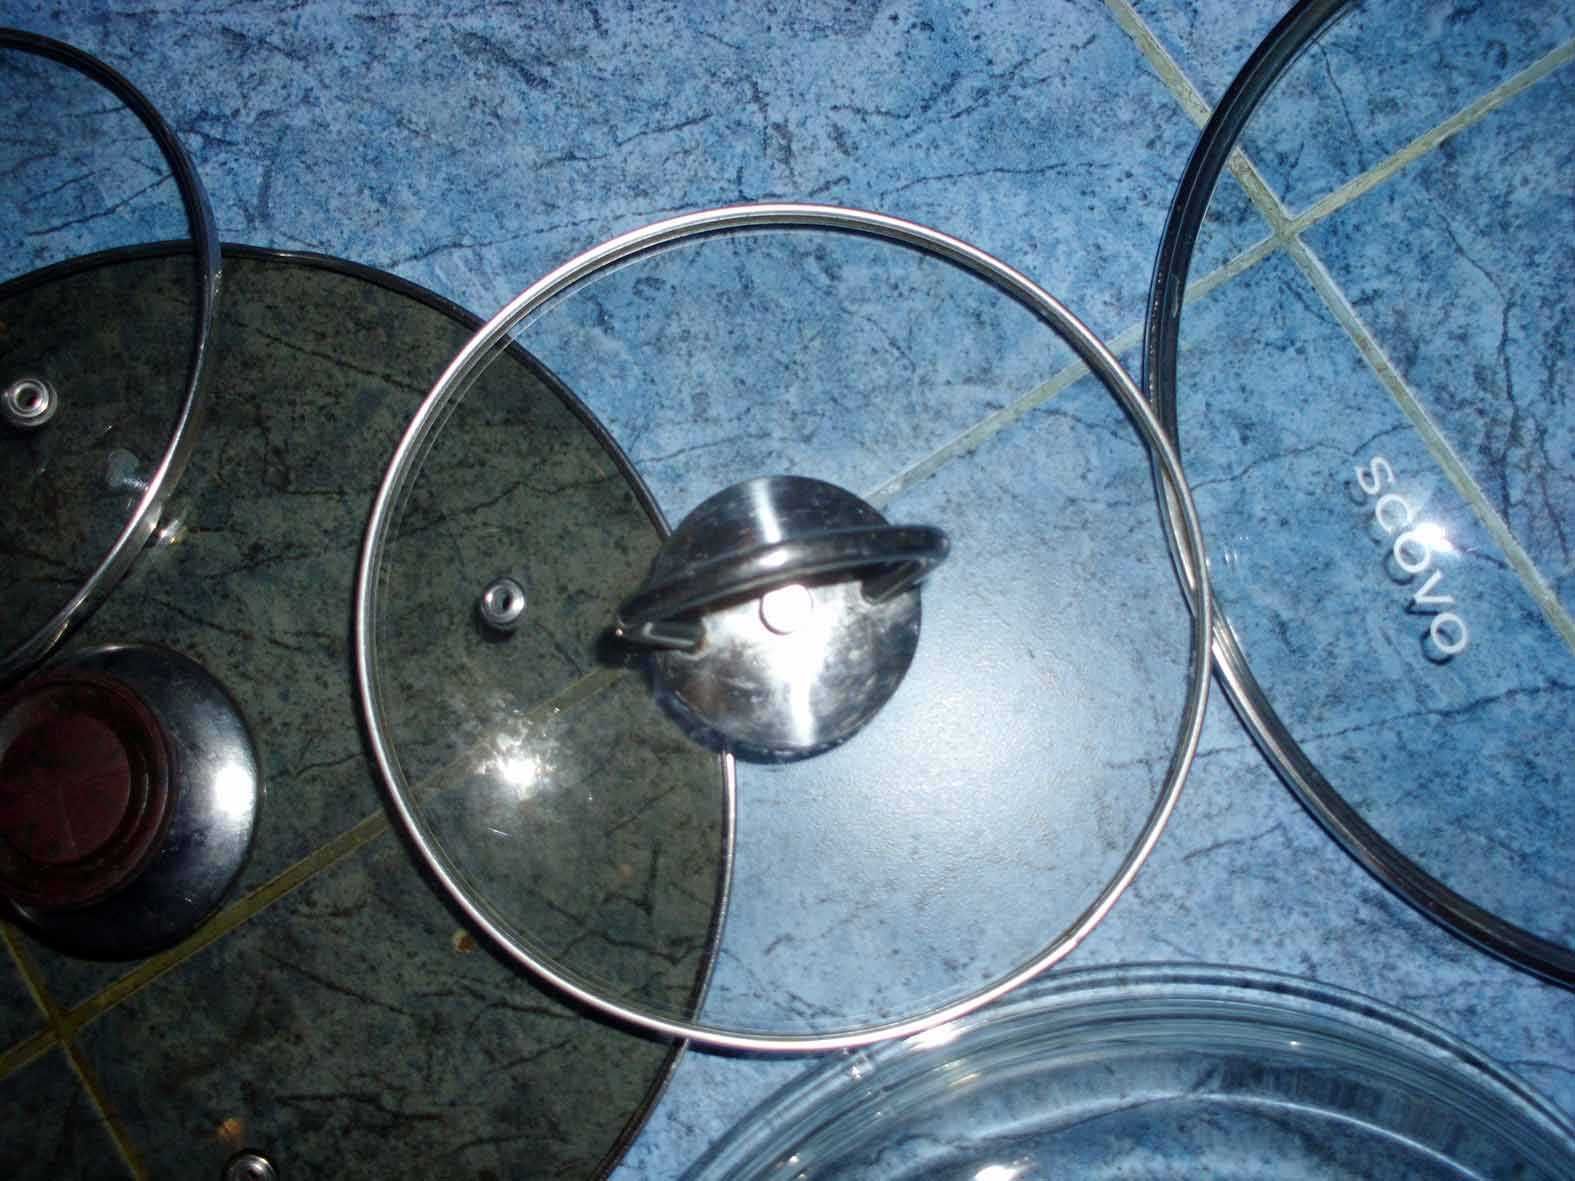 крышки для посуды стекло